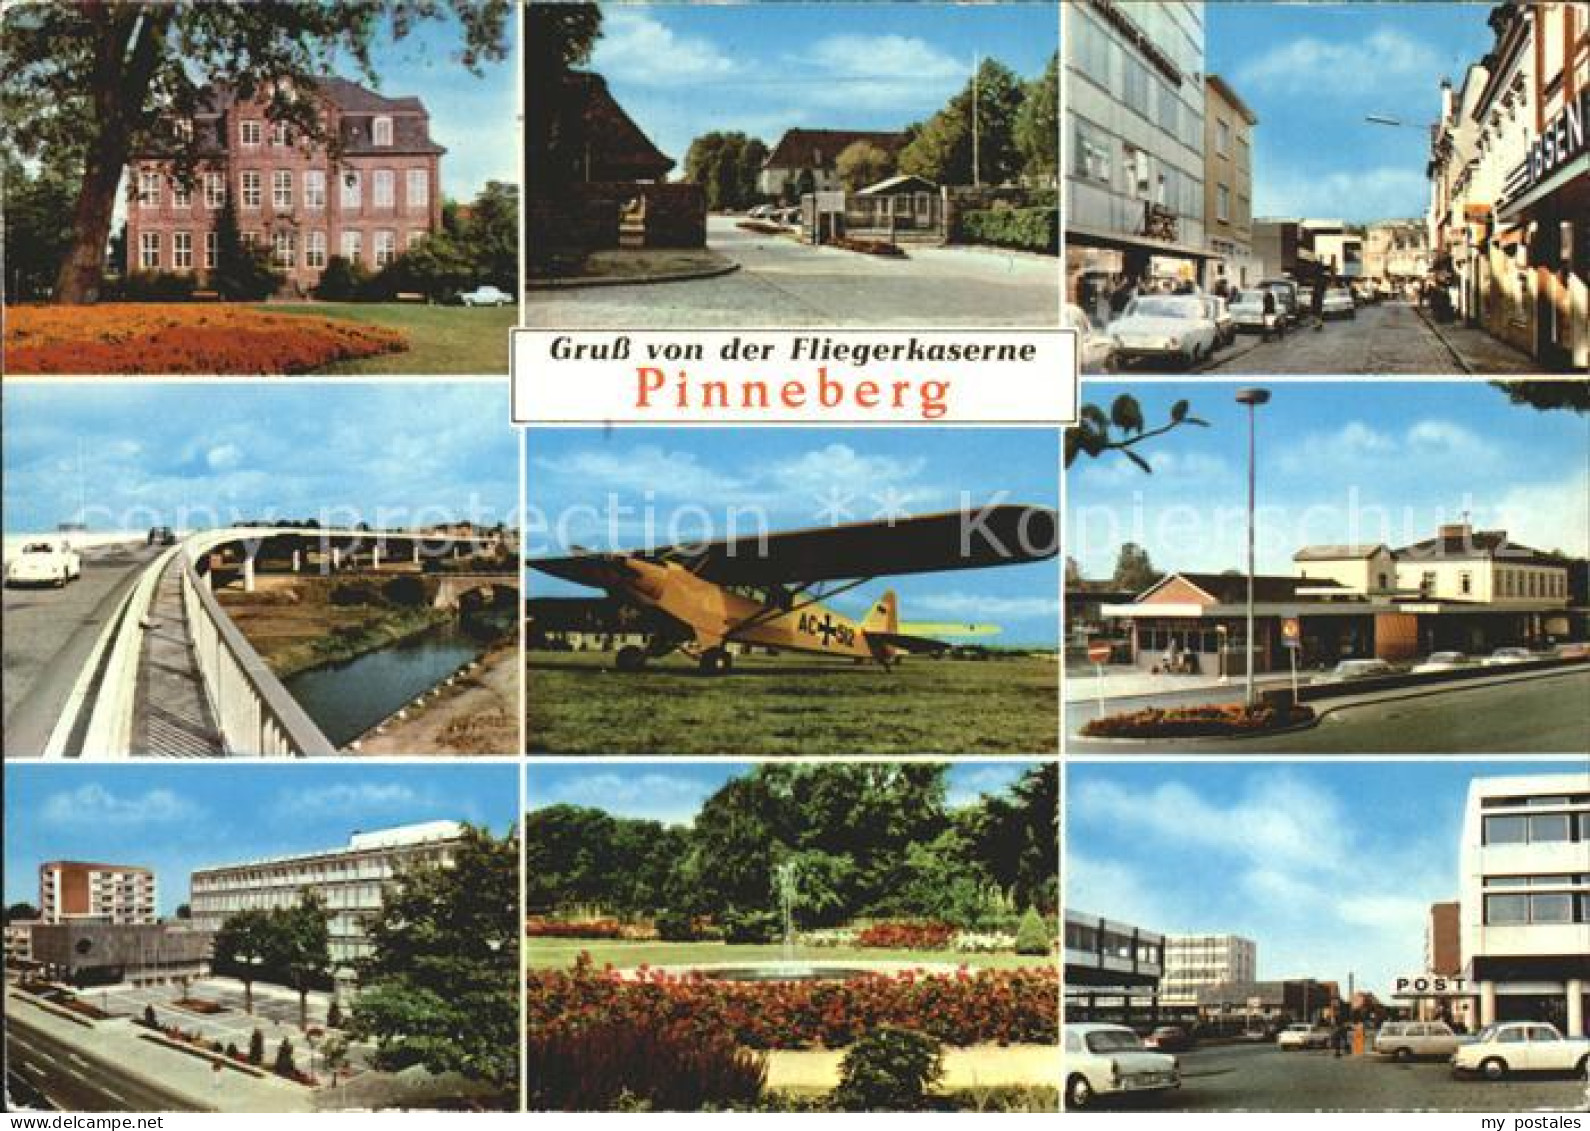 42060949 Pinneberg Fliegerkaserne Post Autobahn Brunnen  Pinneberg - Pinneberg